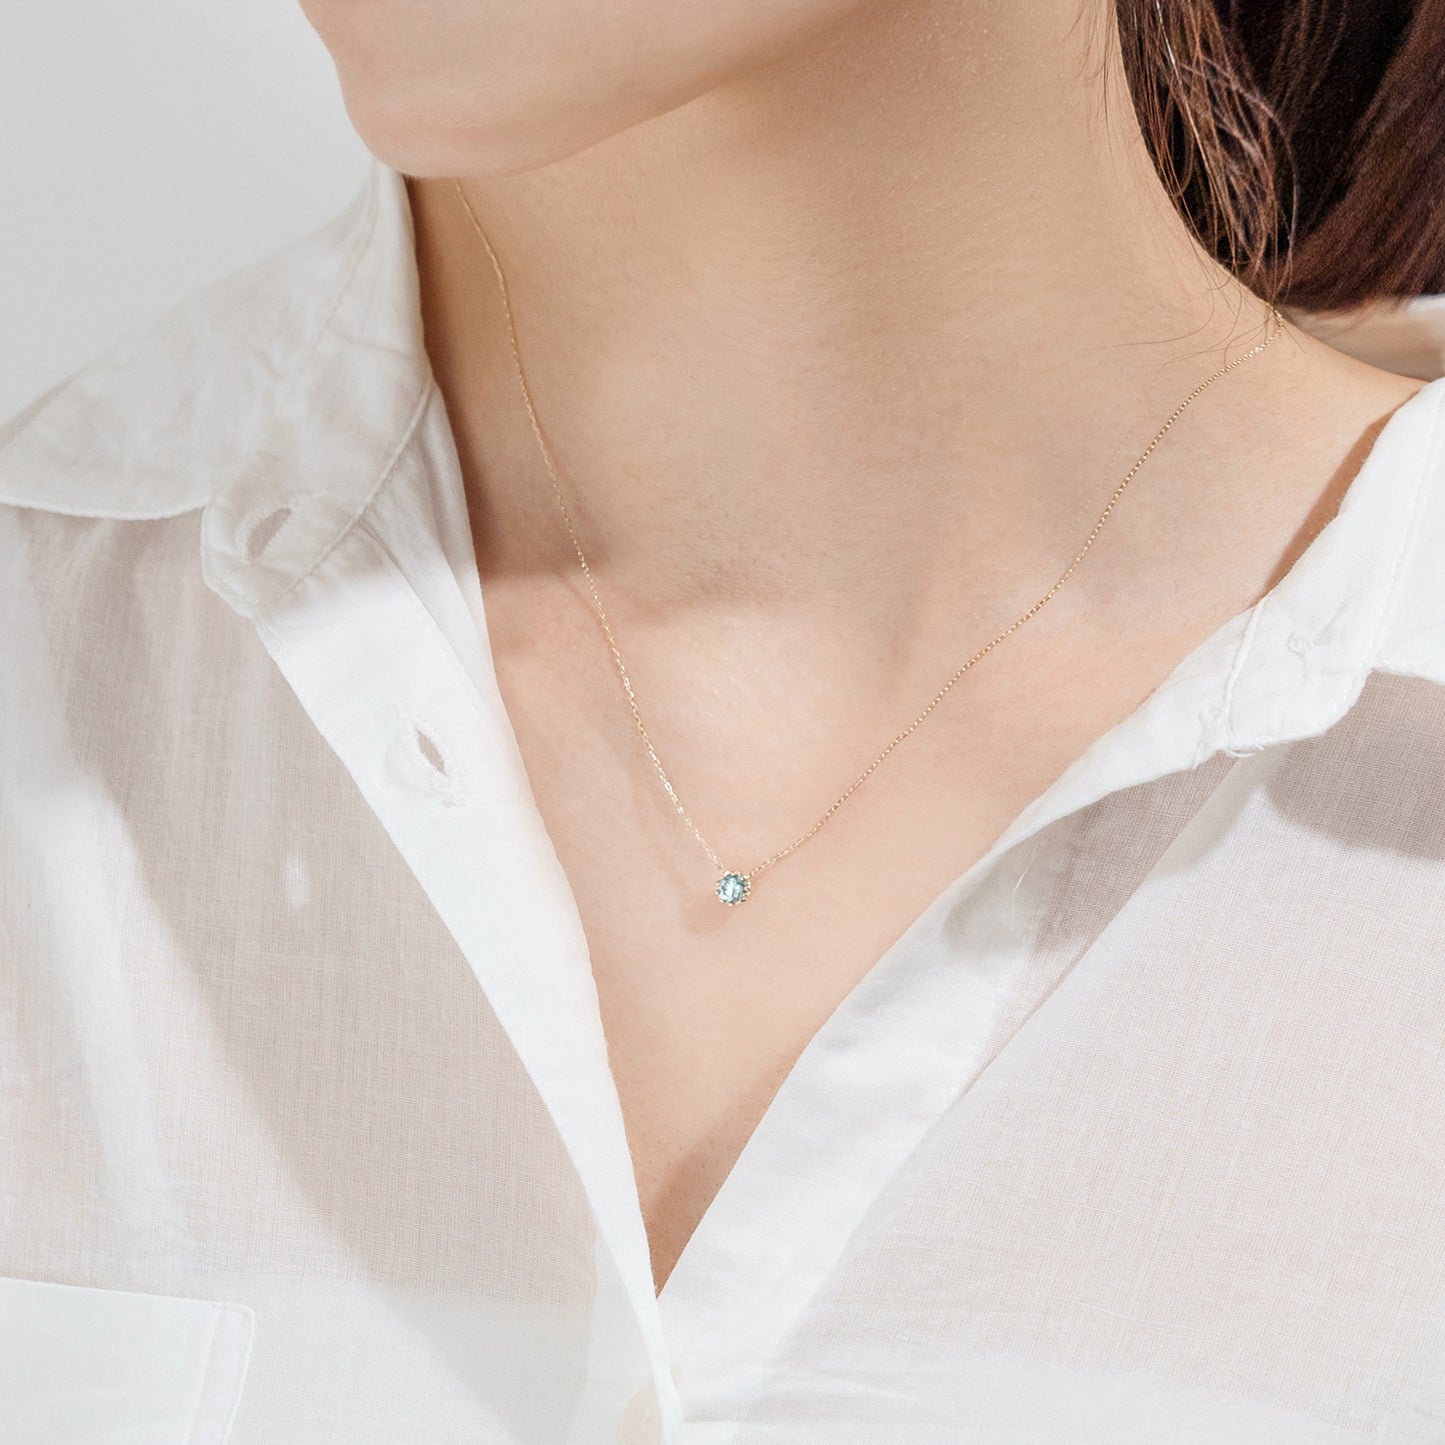 12,250円新品 ネックレス ブルー ジルコン ダイヤモンド K10 透明感 誕生石